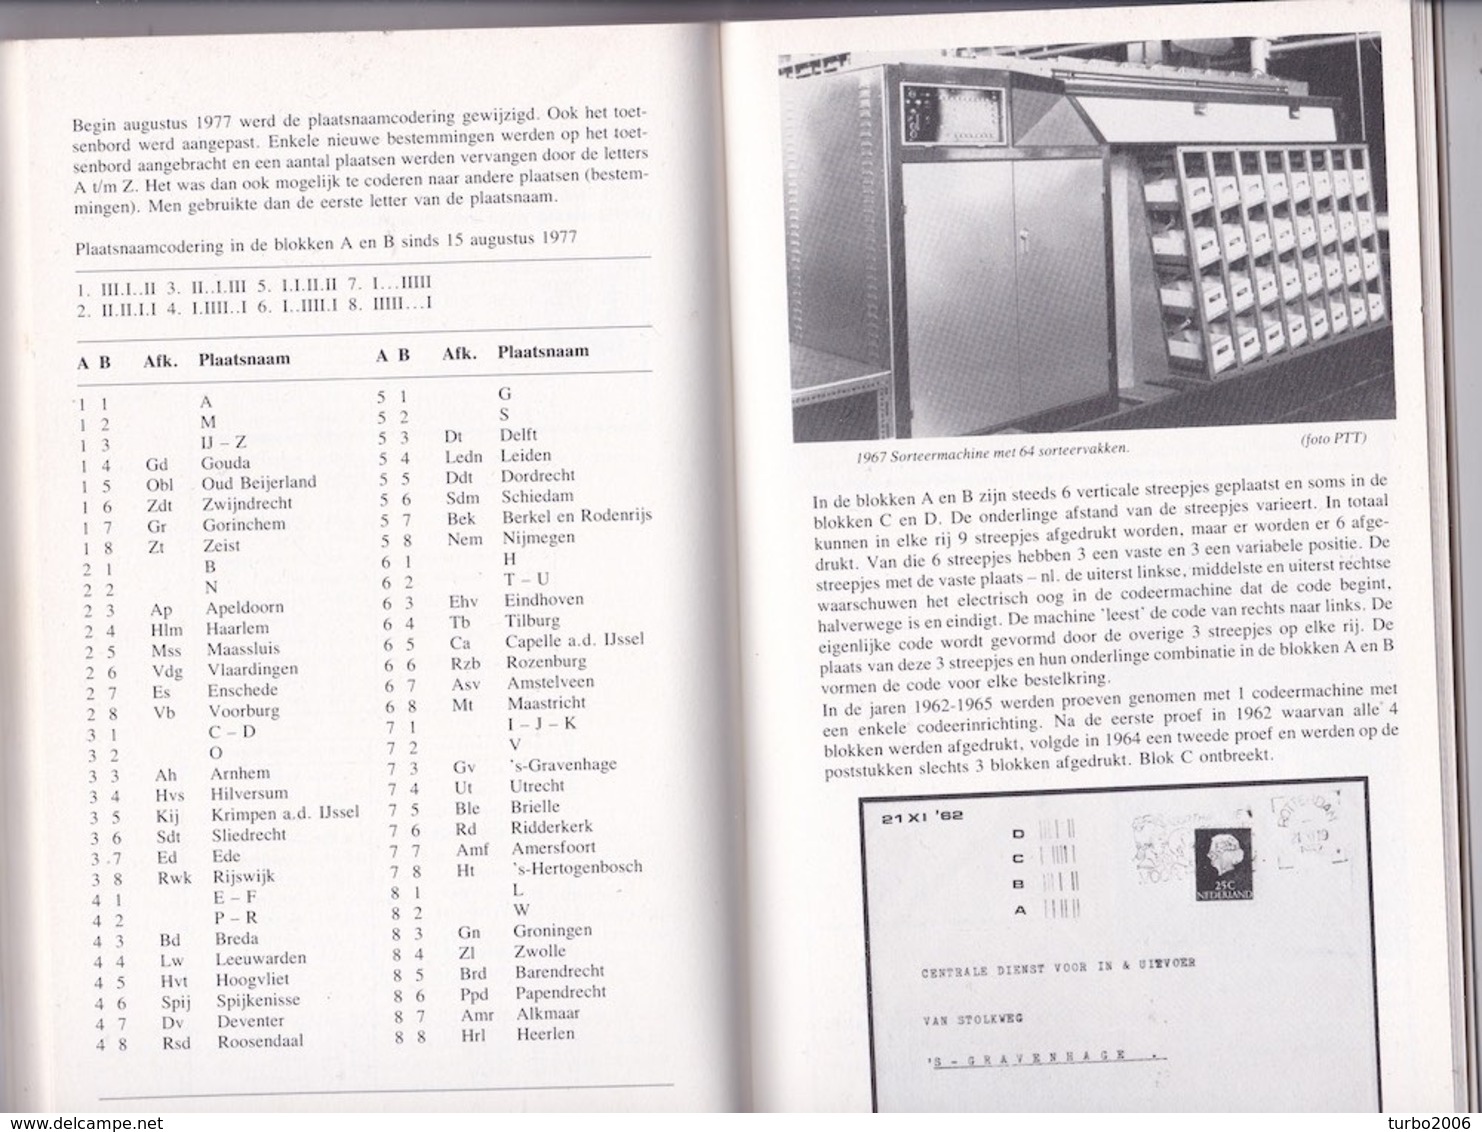 NEDERLAND : 1983 75 jaar  NBFV jubileumuitgave Zie scans met voorbeelden